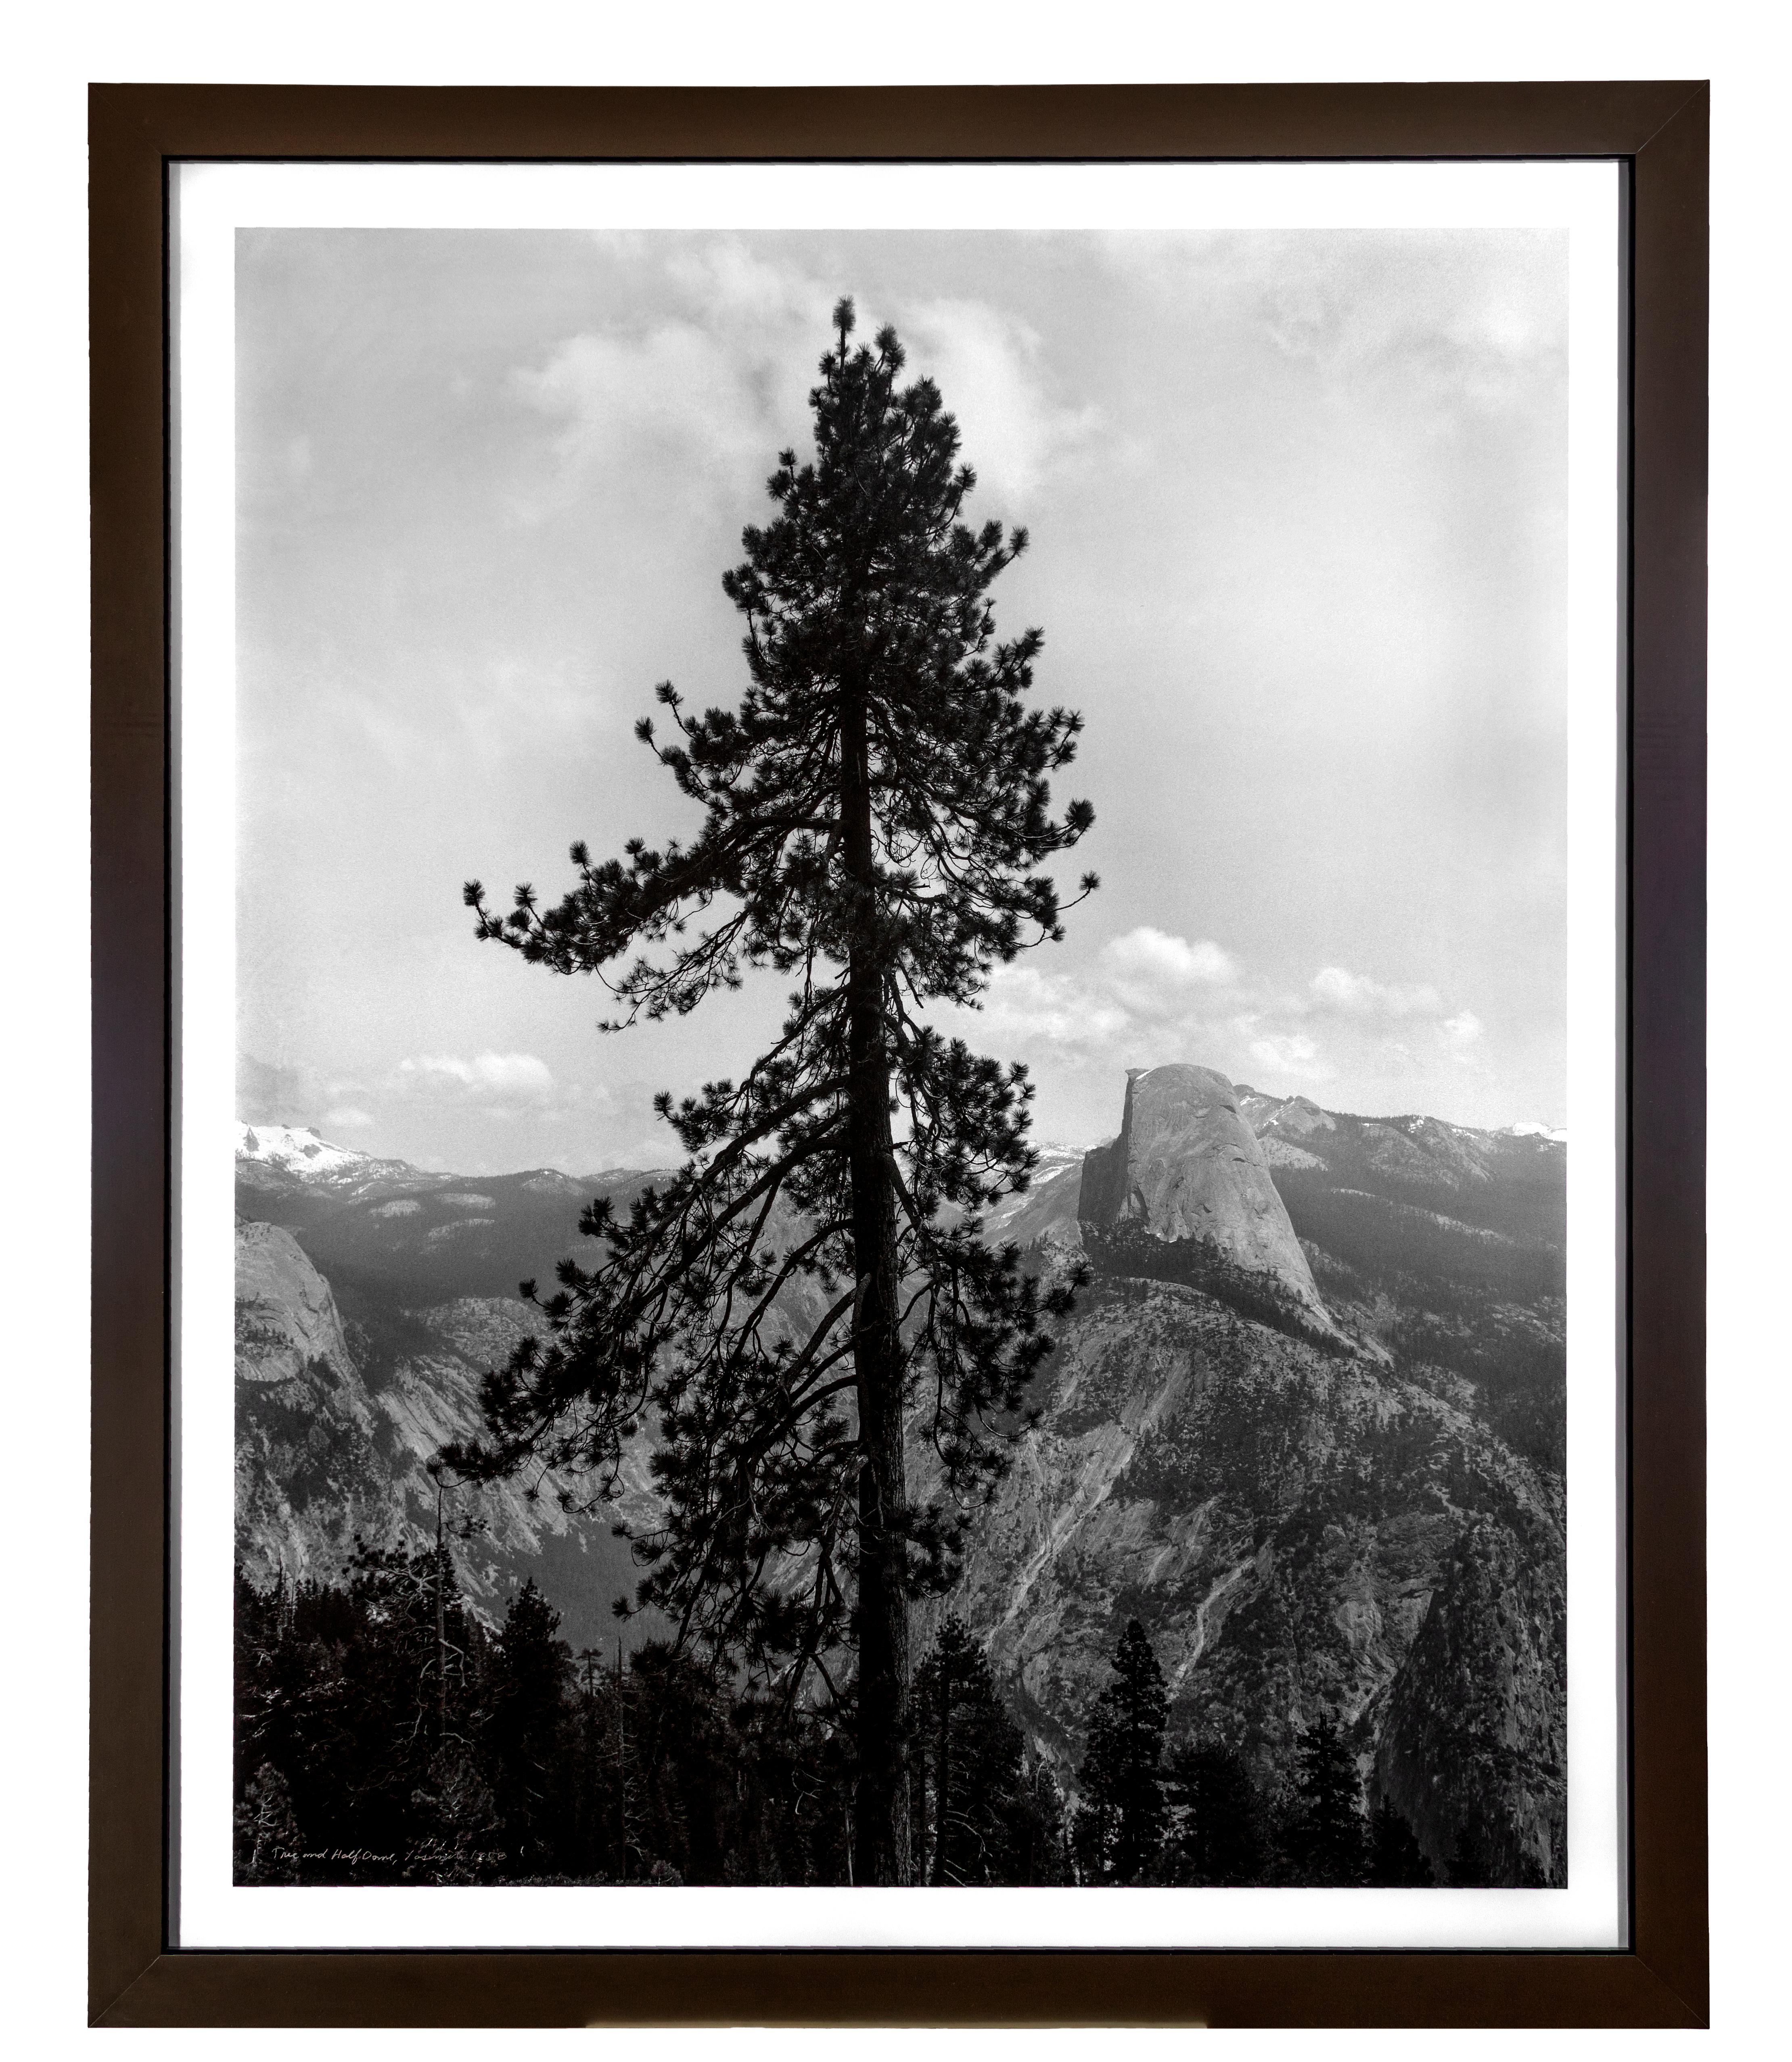 Thomas Ferderbar Landscape Photograph – "Tree & Half Dome (Yosemite National Park, CA)" Fotografie signiert von T Ferderbar